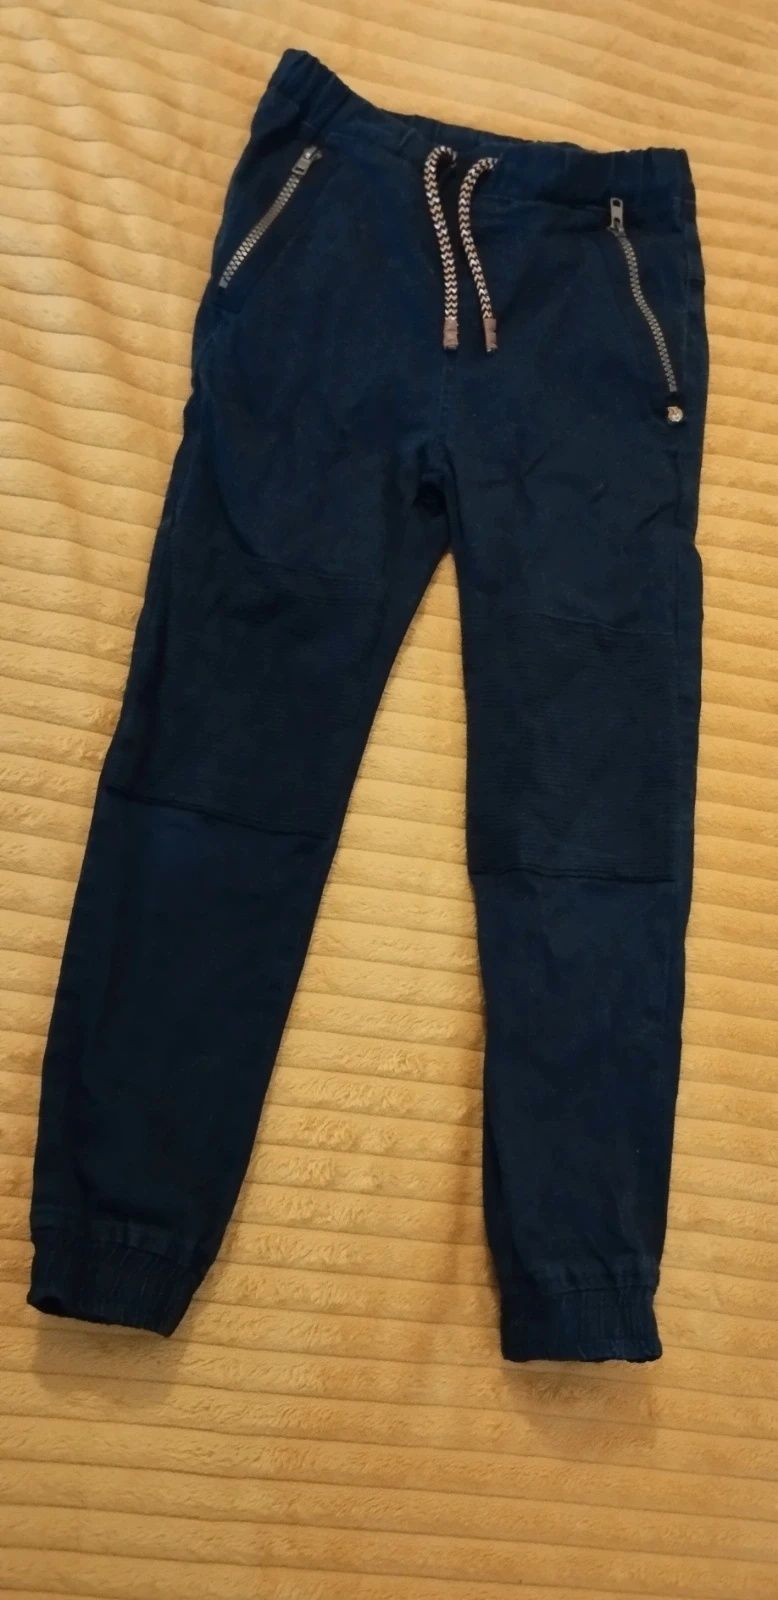 Spodnie dla chłopca, LC Waikiki, 134 cm.
Długość 75